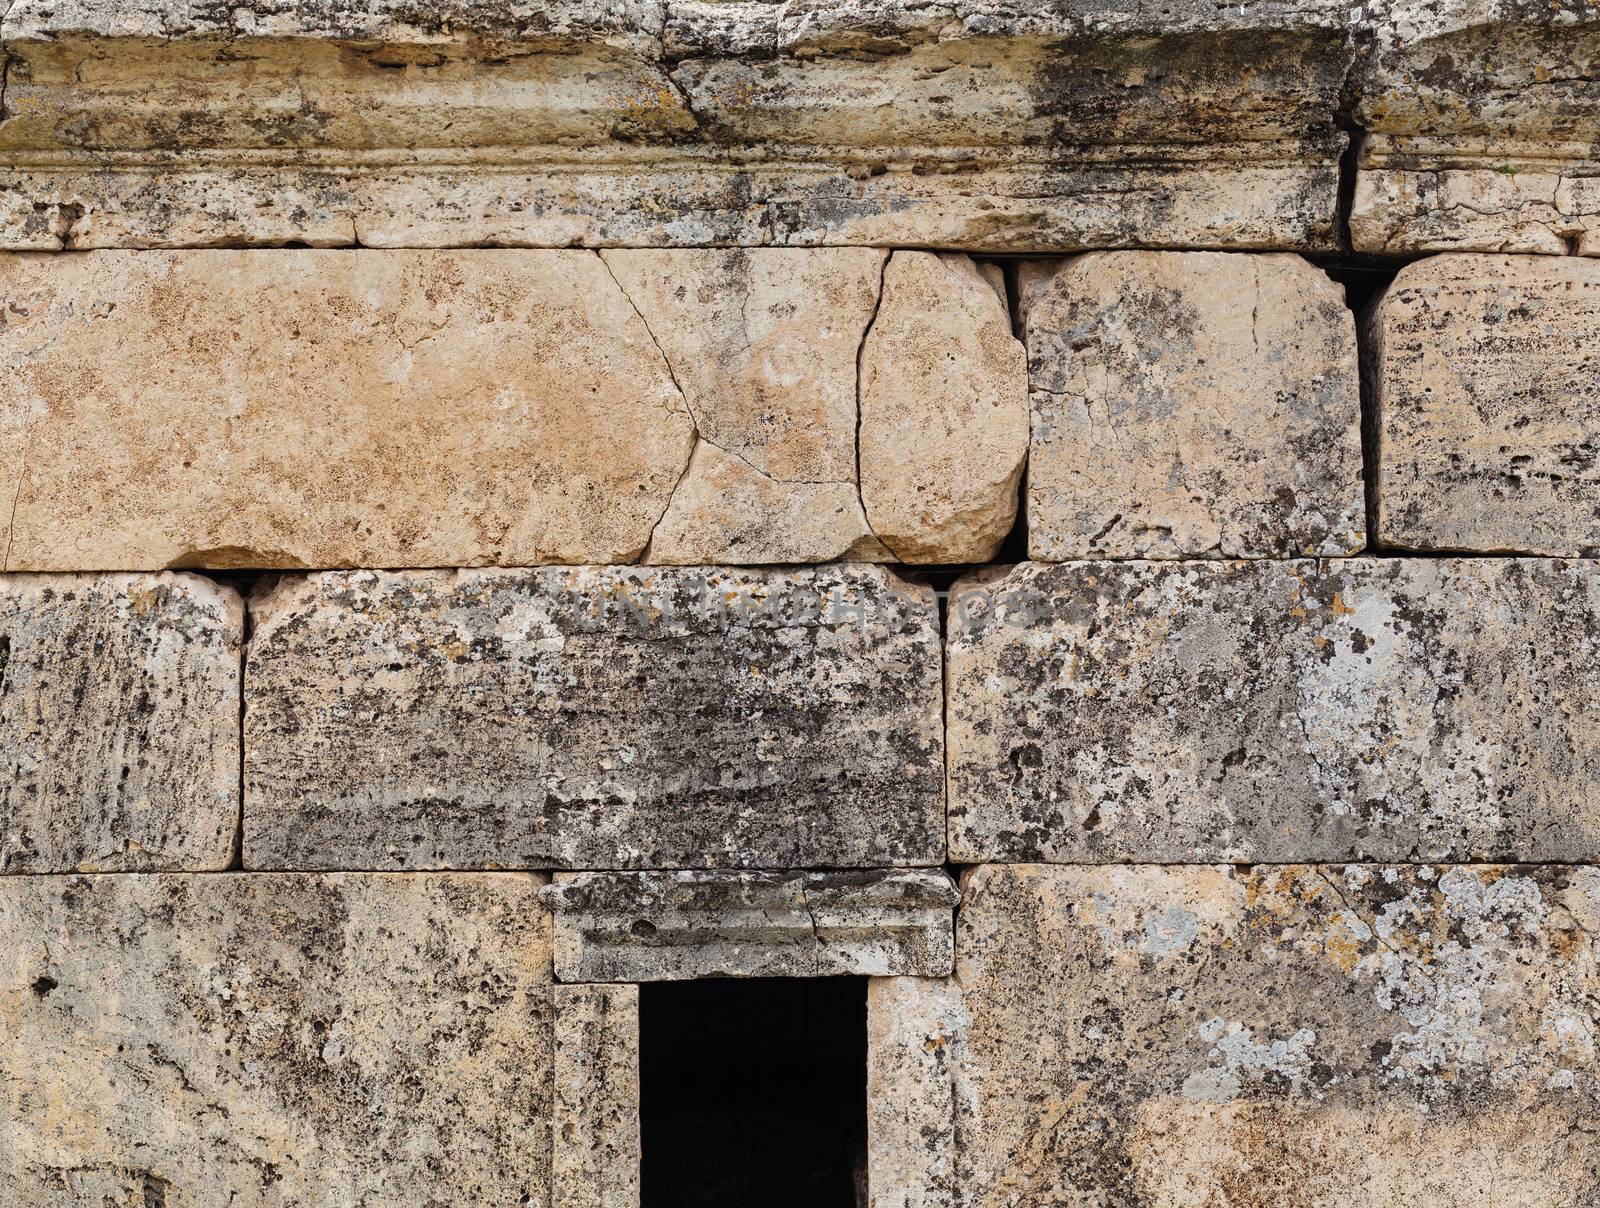 Ruins of ancient city, Hierapolis near Pamukkale, Turkey by igor_stramyk